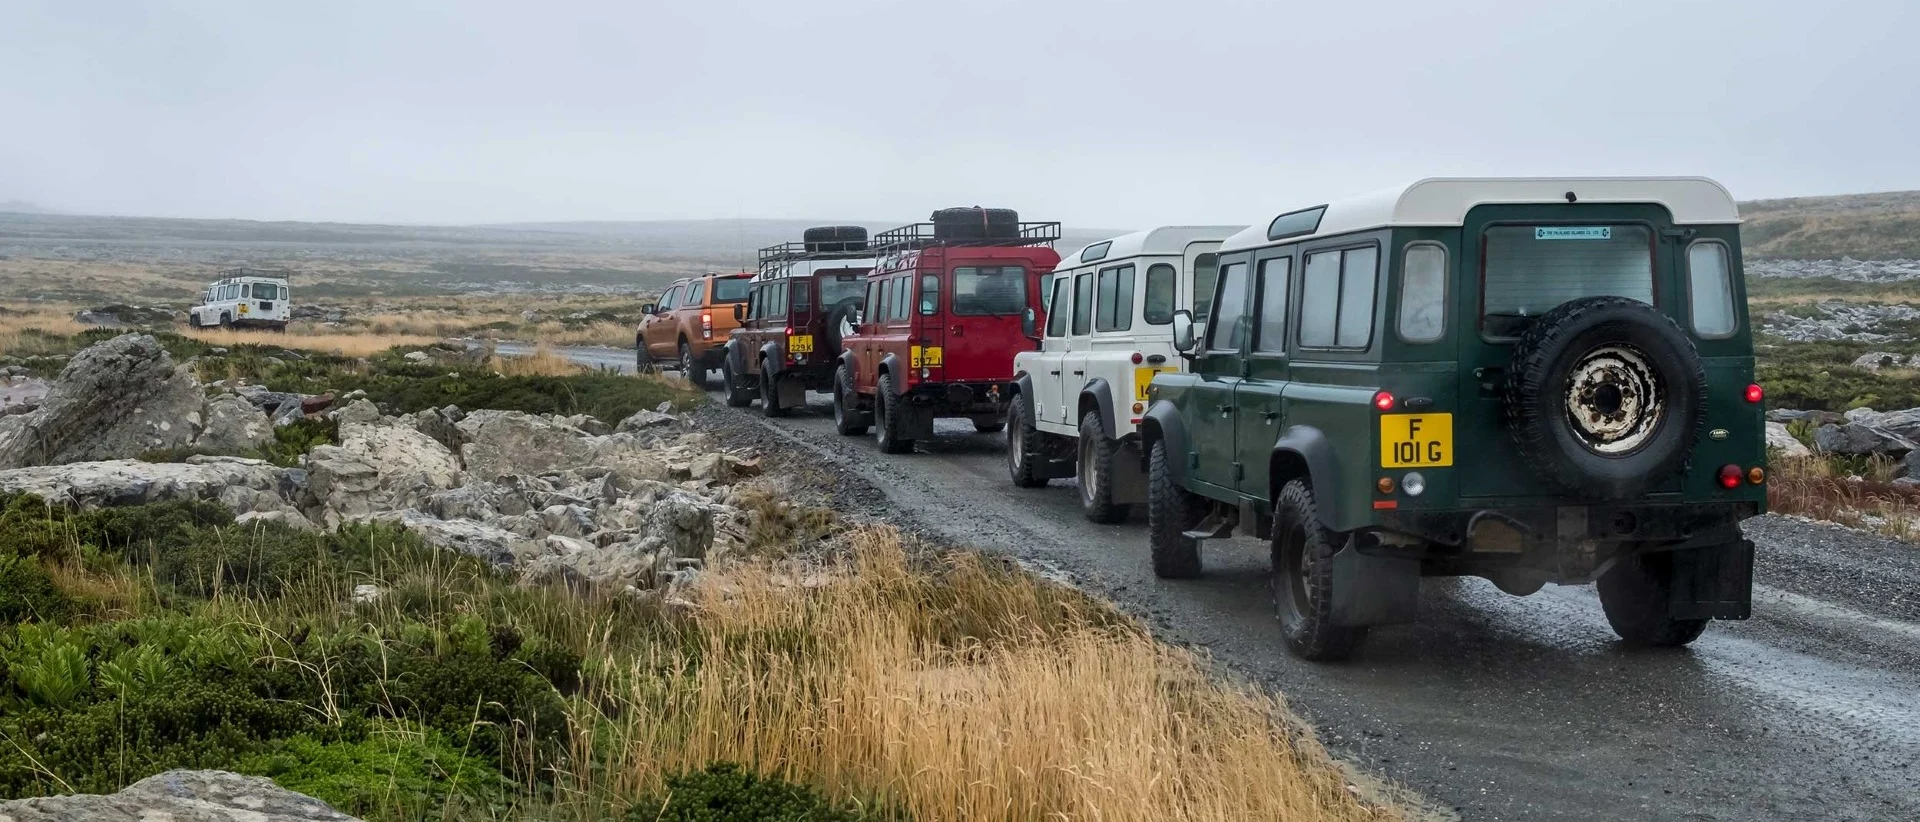 Port Stanley: Kronjuvelen på Falklandsøyene